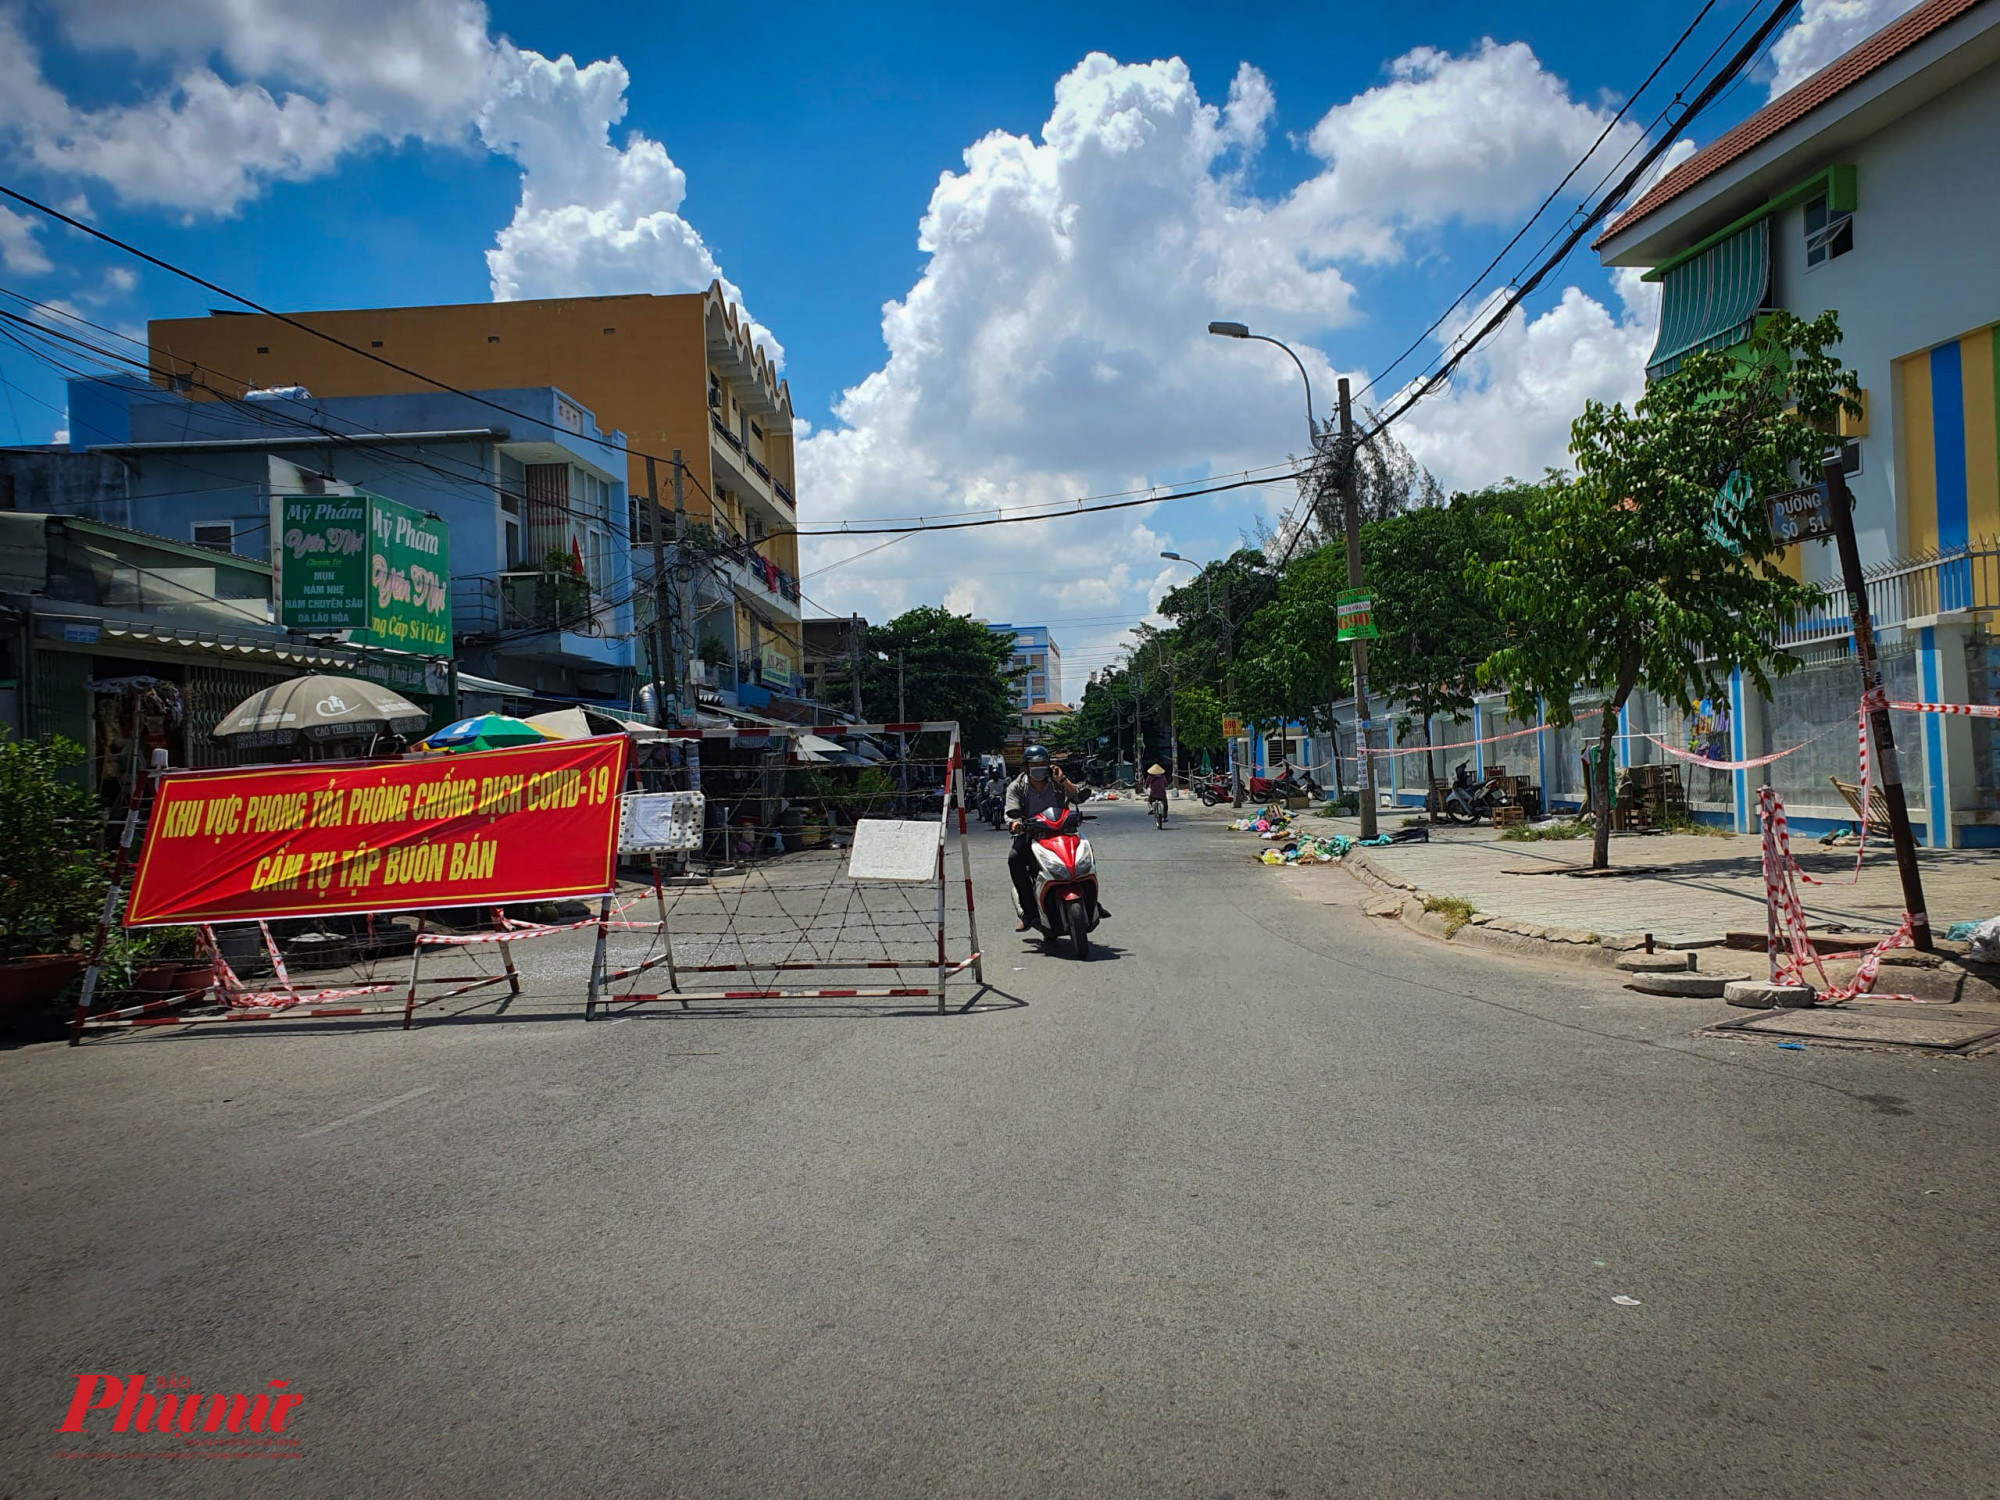 Khu vực đường số 51, phường Tân Tạo A, nghiêm chỉnh chấp hành lệnh tạm ngừng hoạt động của UBND quận Bình Tân